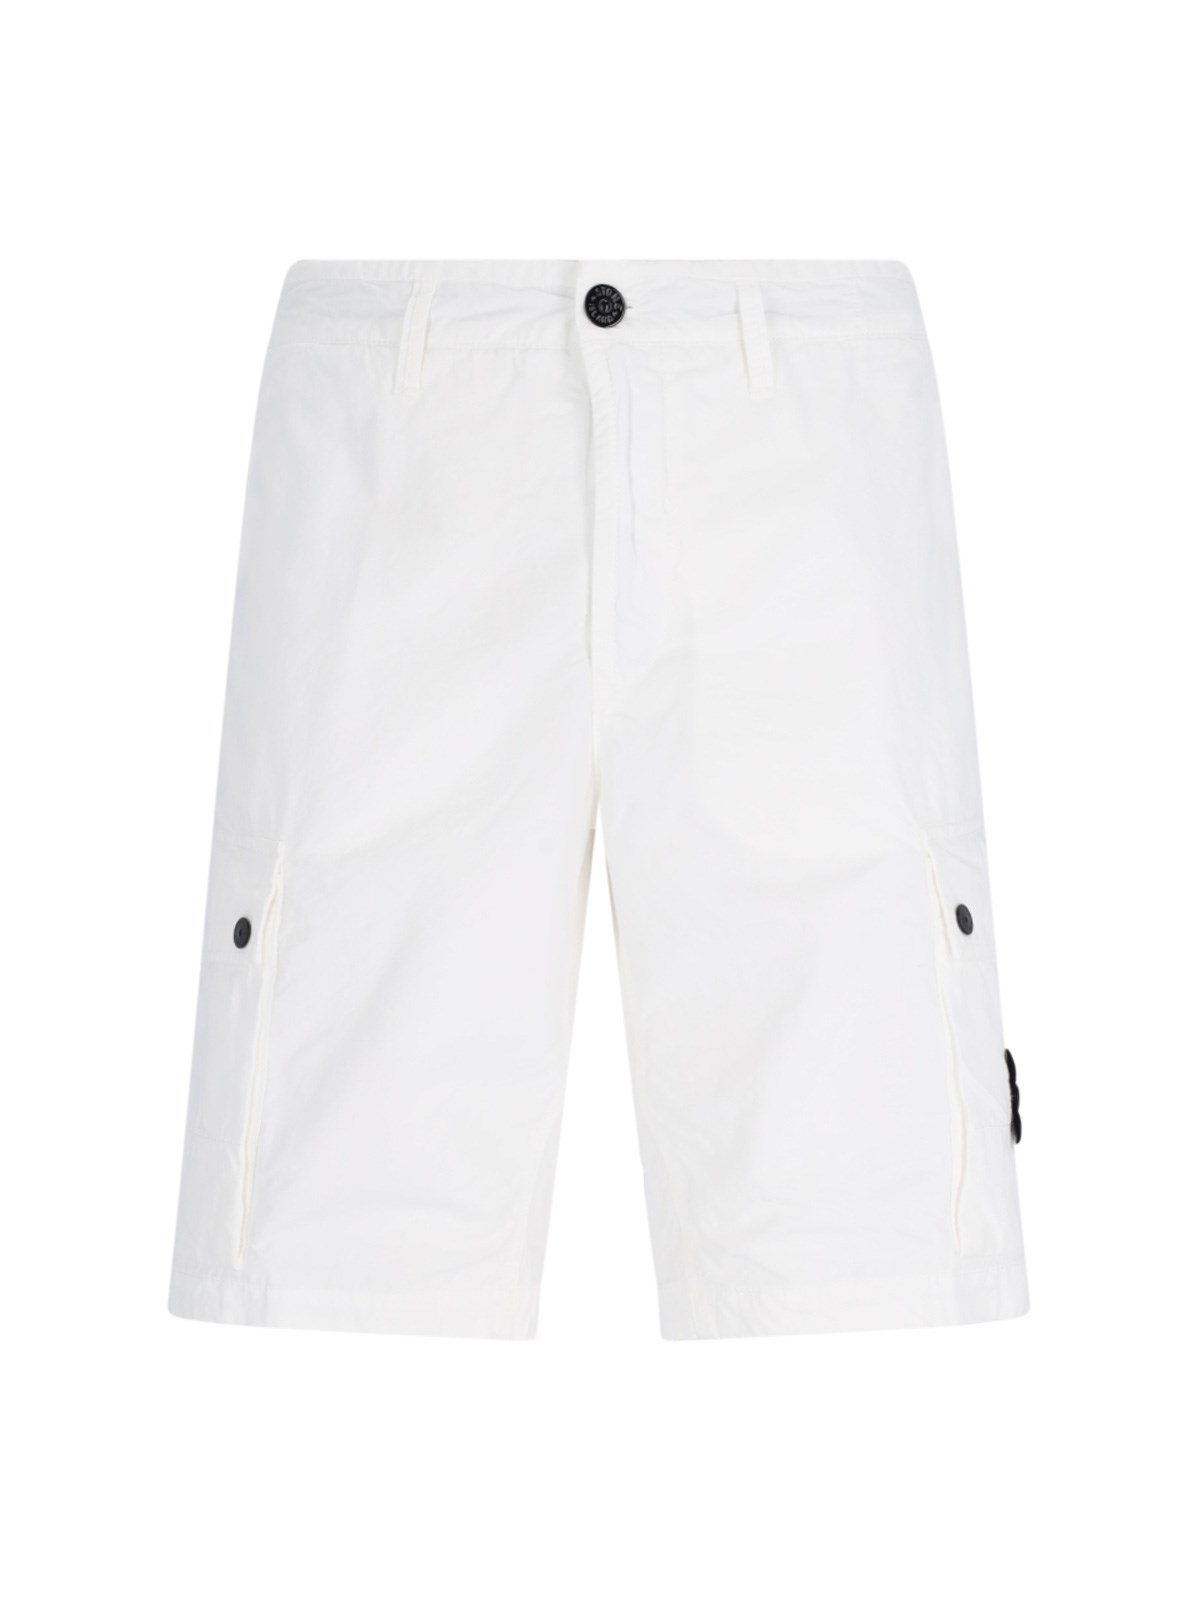 Stone Island Bermuda Shorts In Cotton Canvas L11wa In White